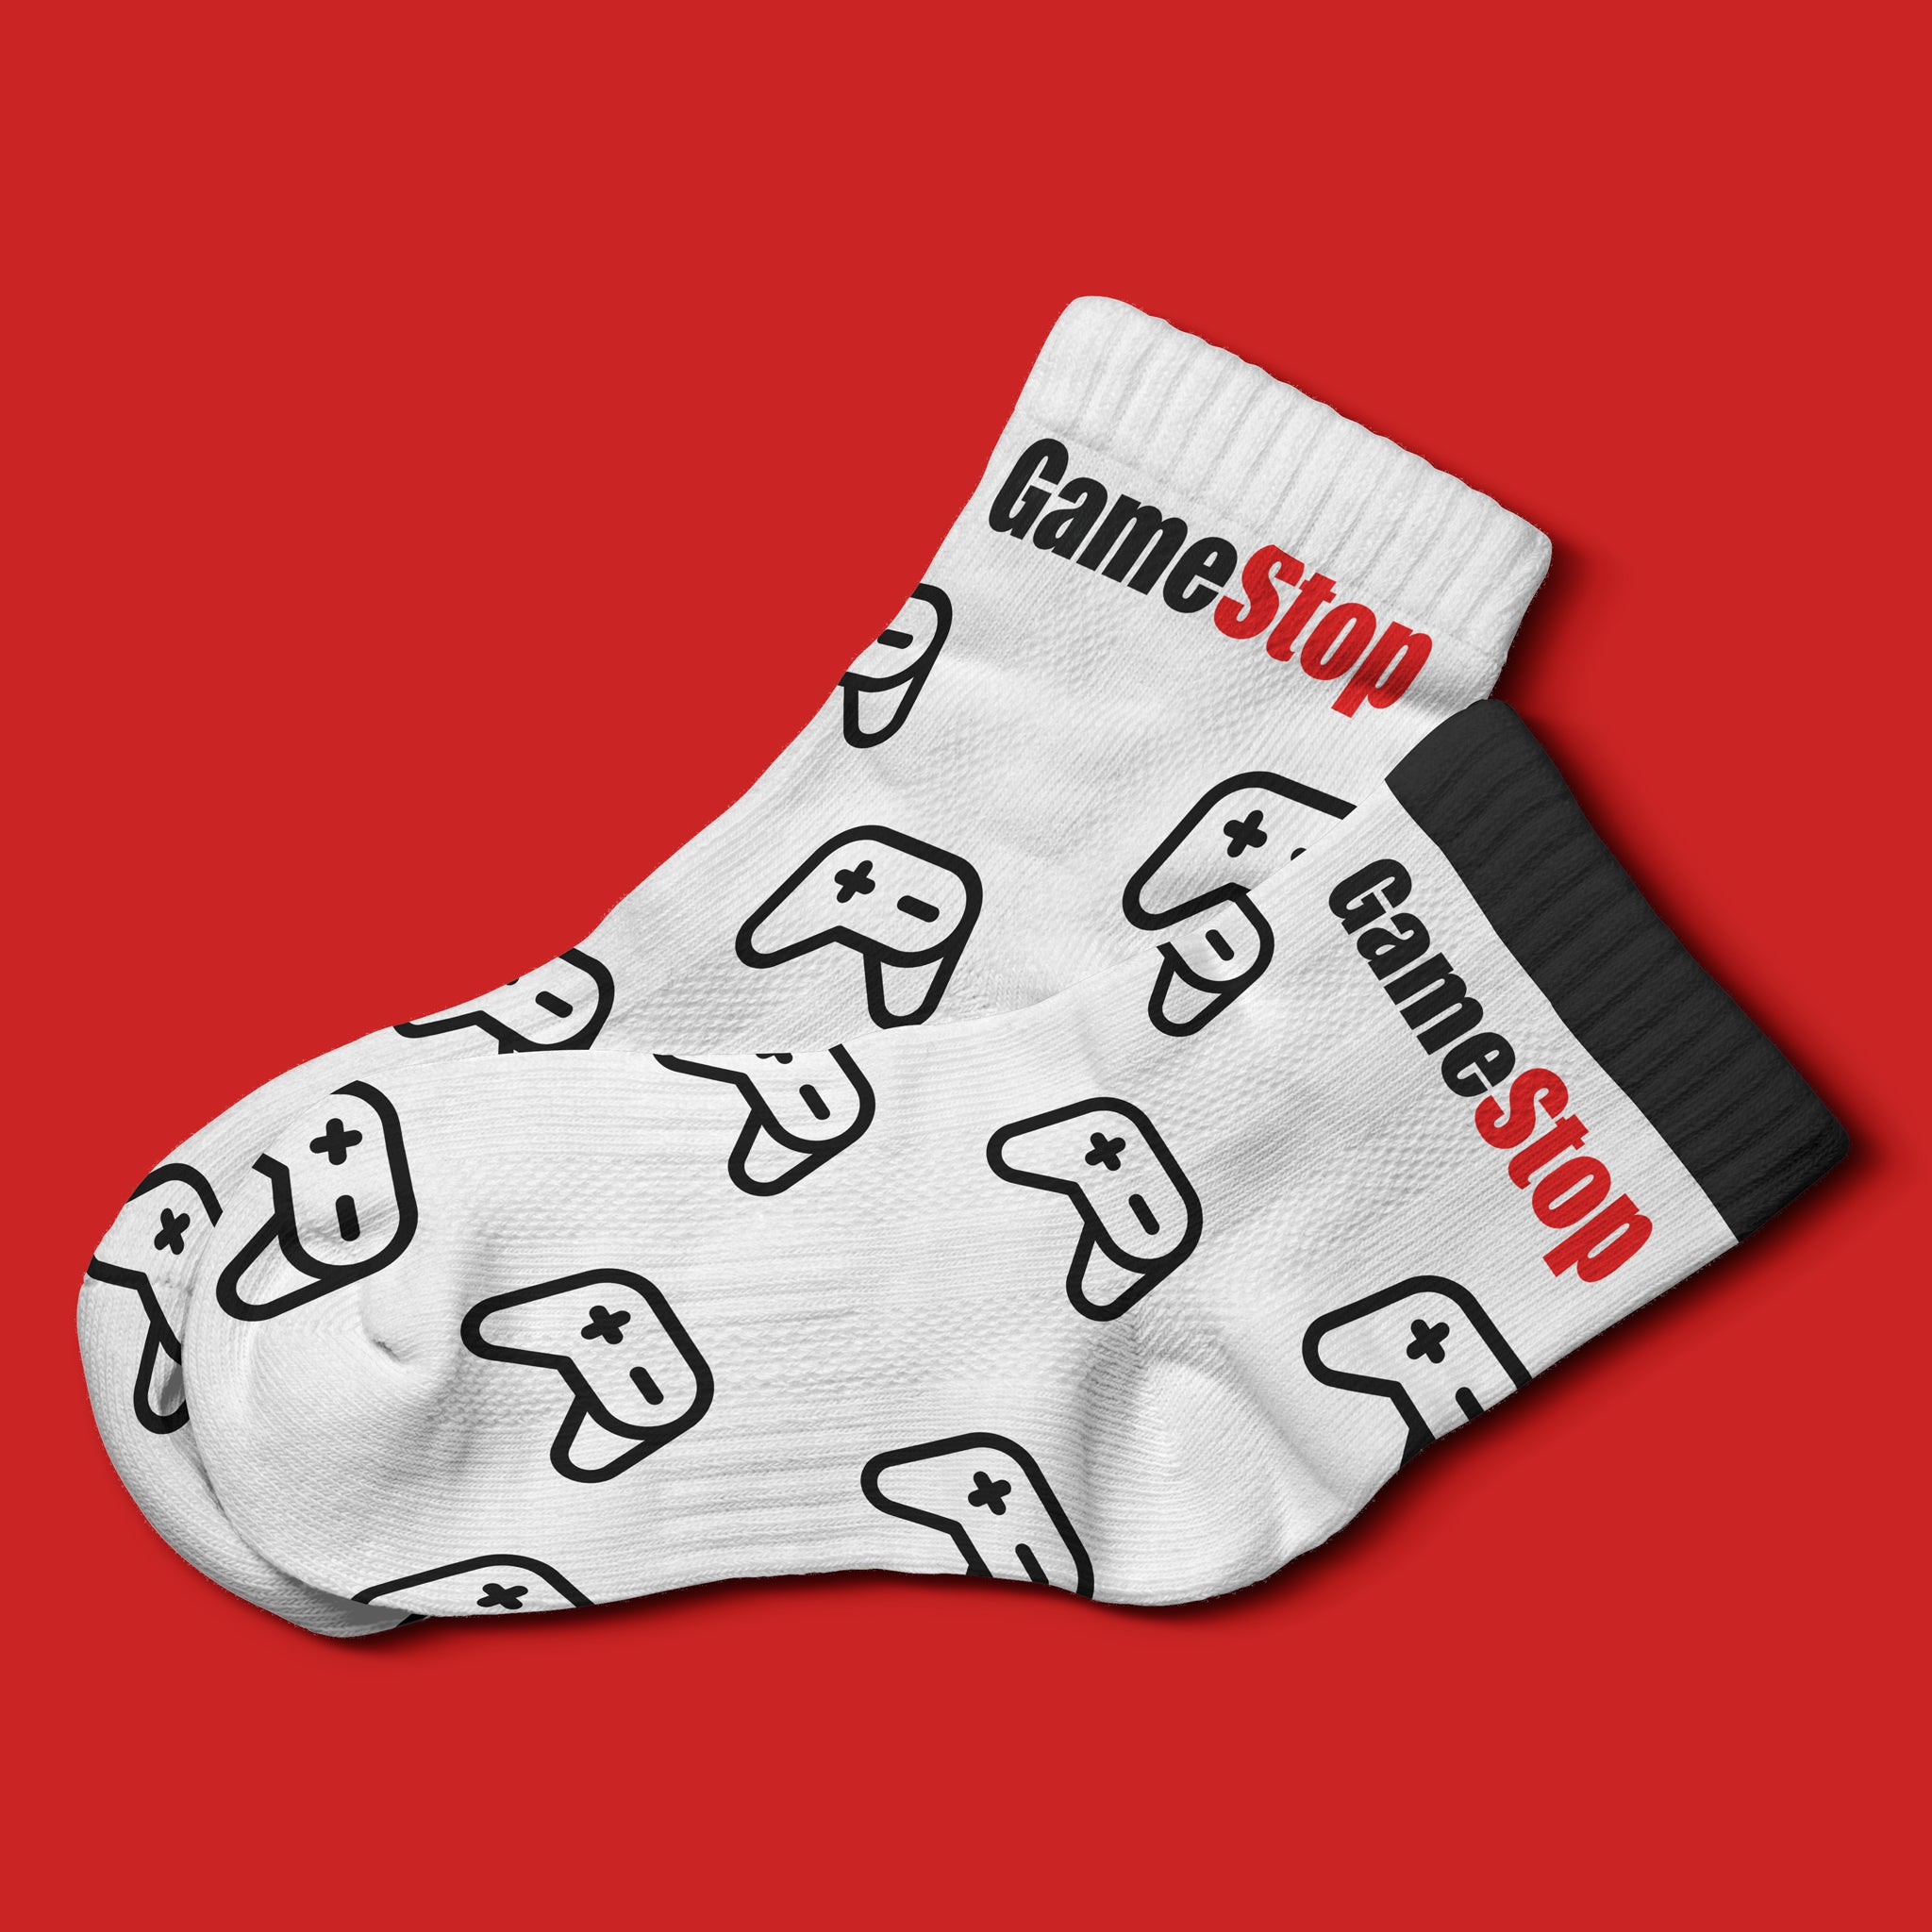 Custom Youth Socks, $12 per pair